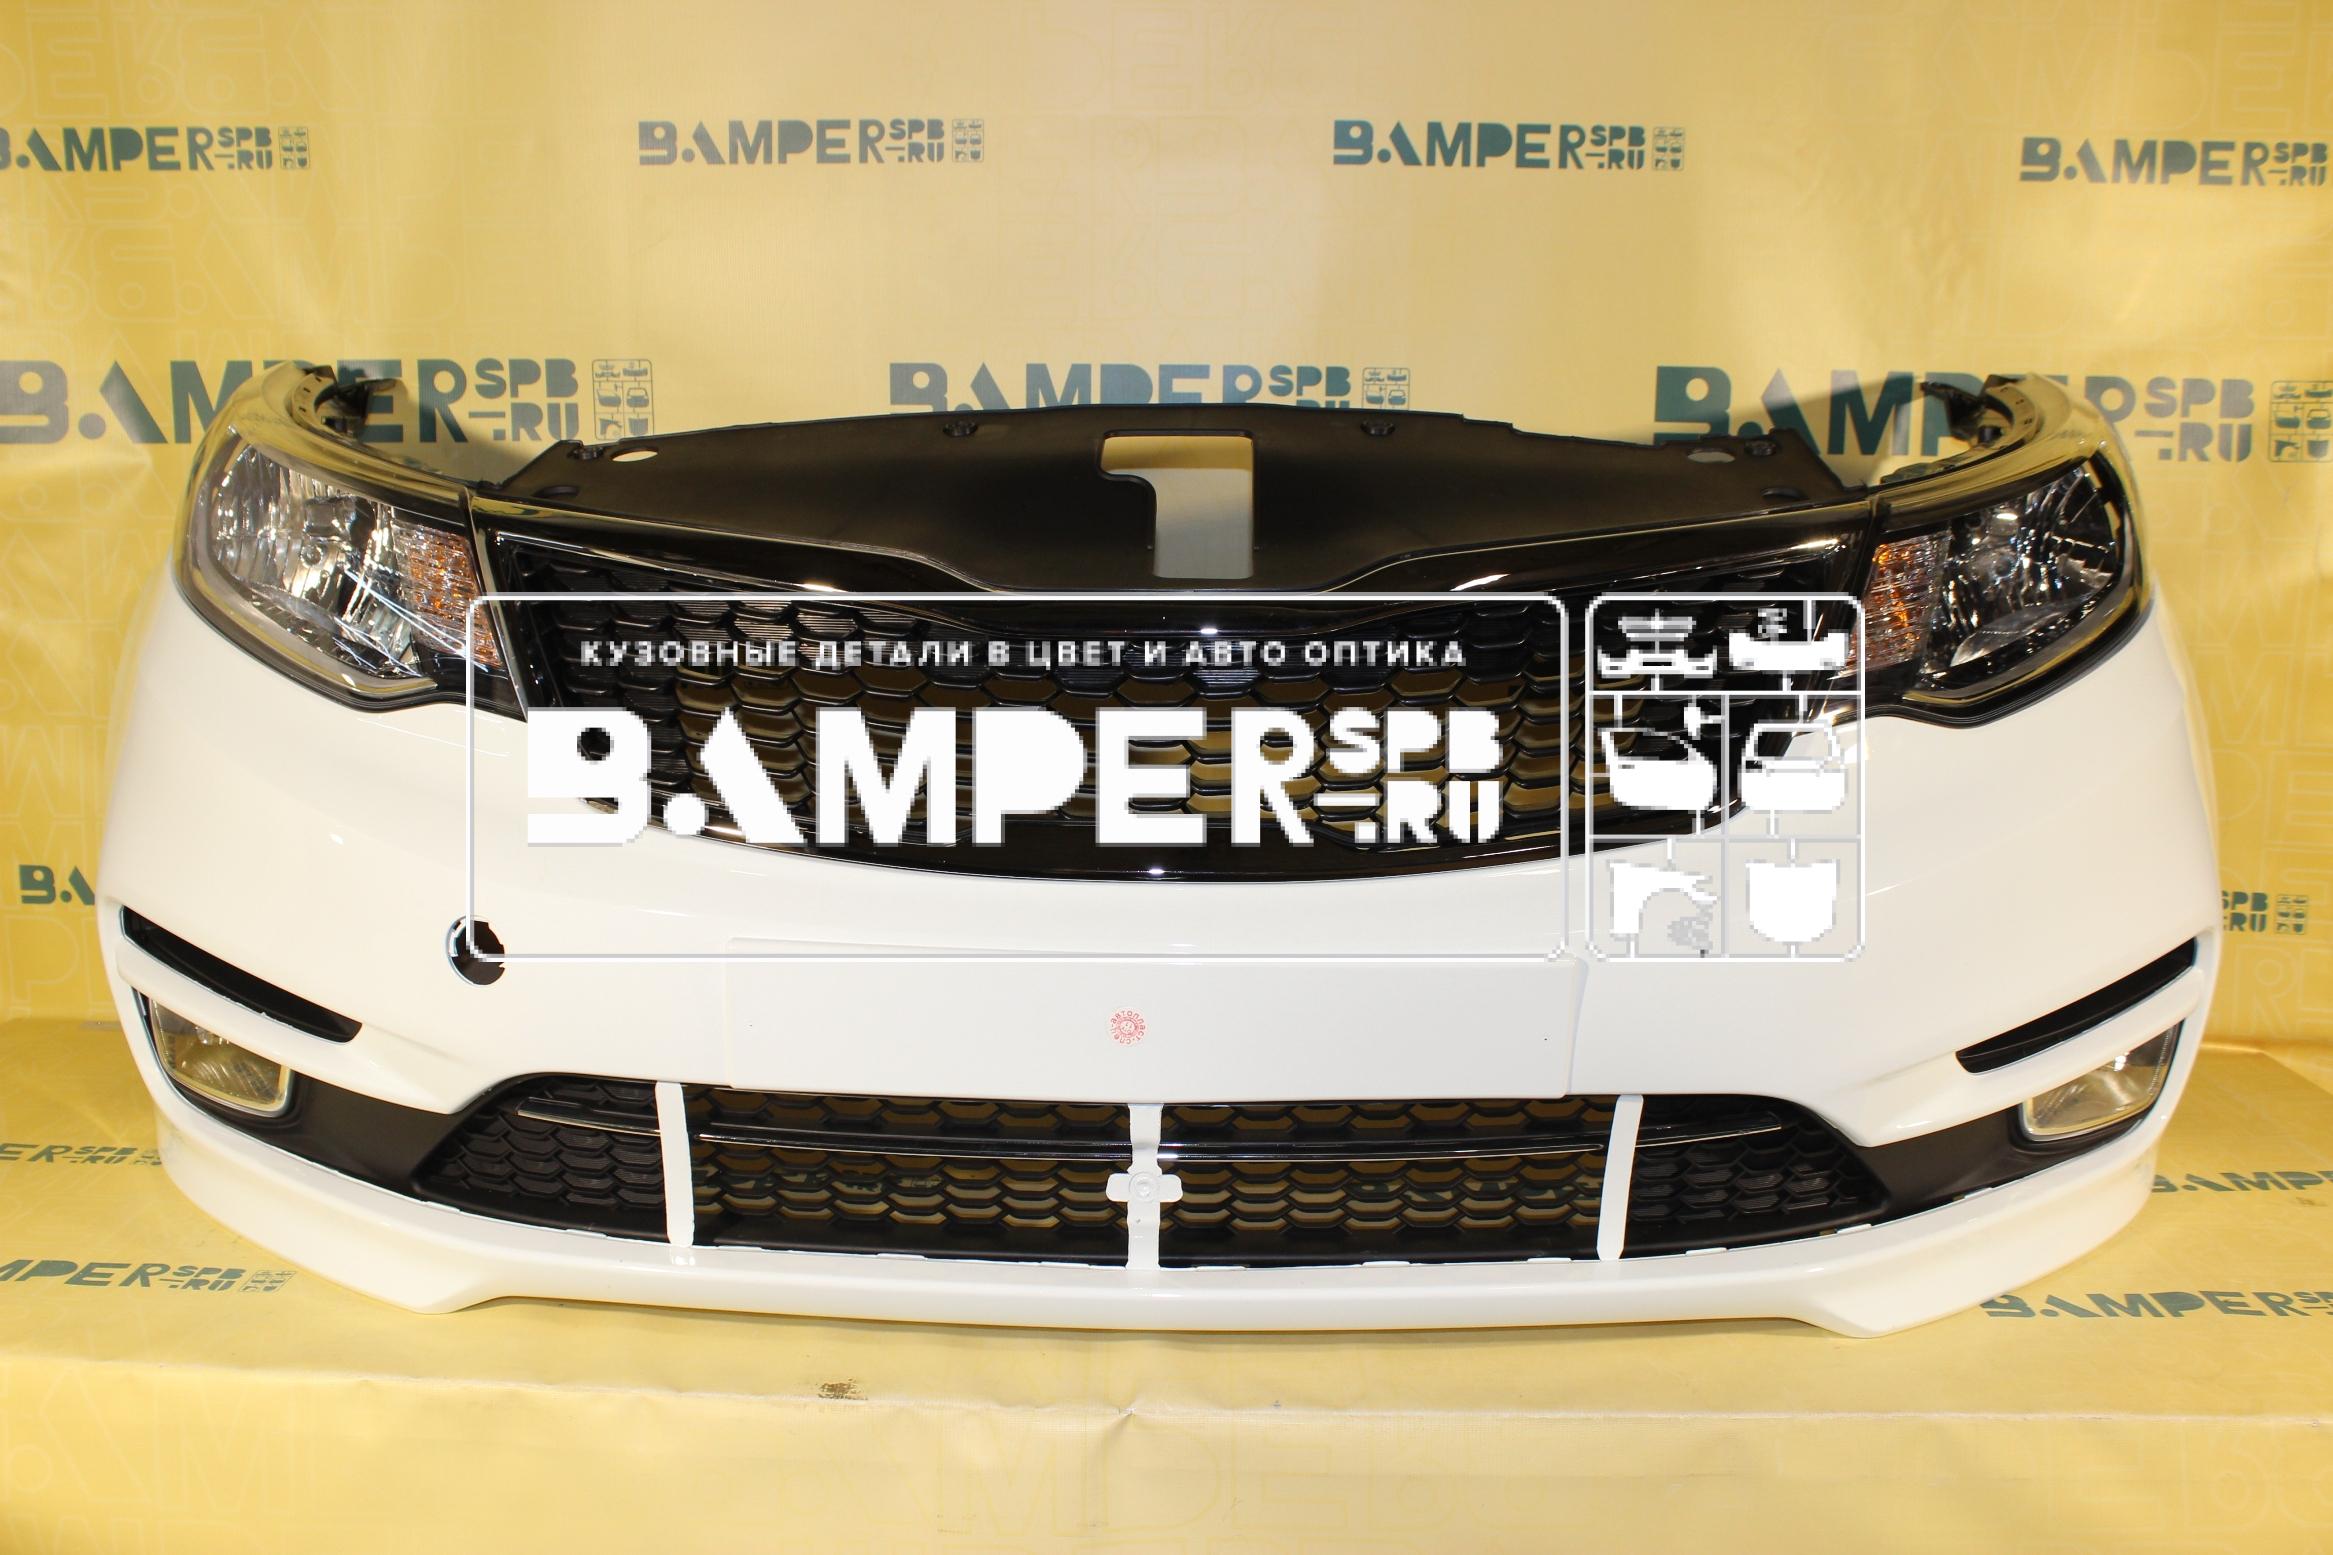   Kia Rio 3 2015-2017 - Bamper-SPbru